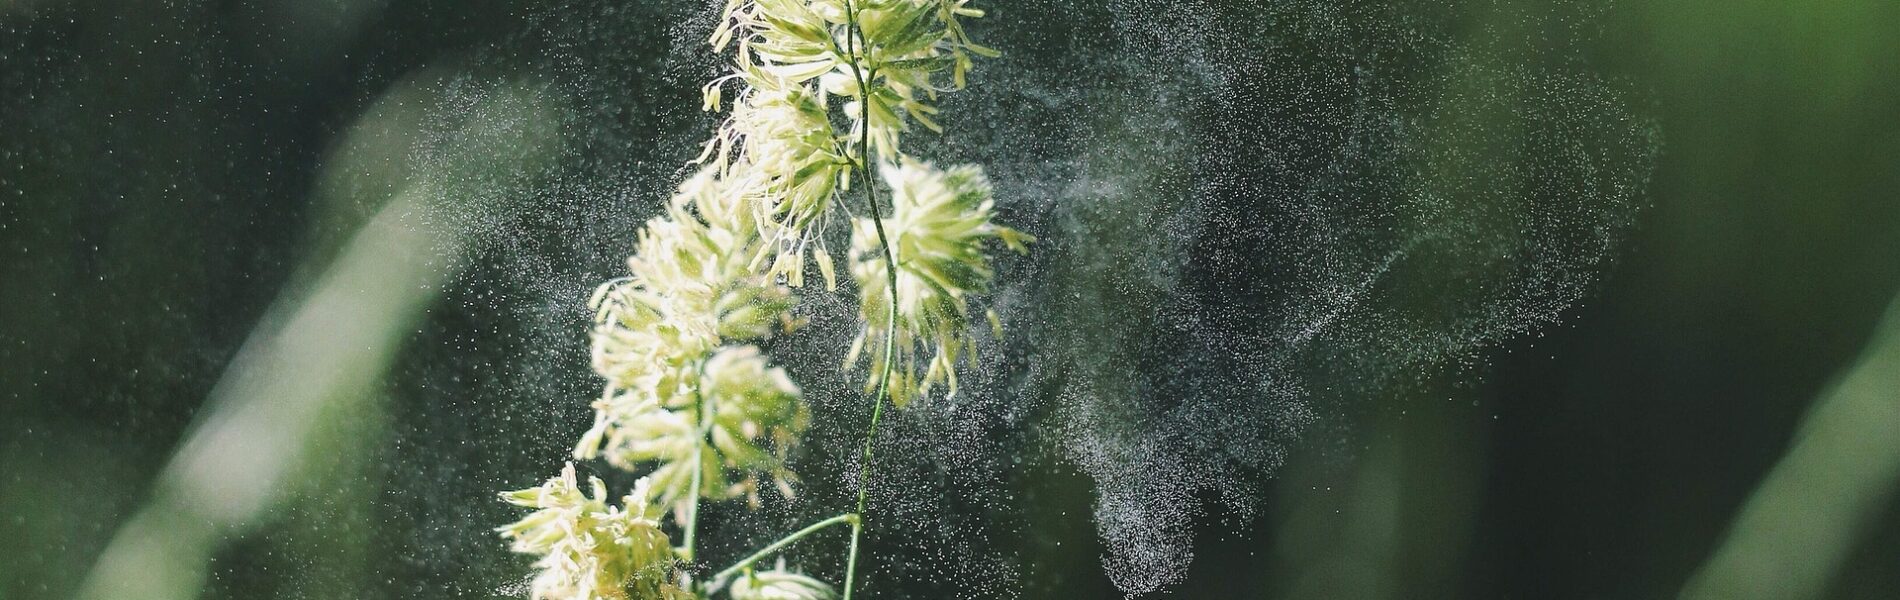 Cloud of pollen around a flower